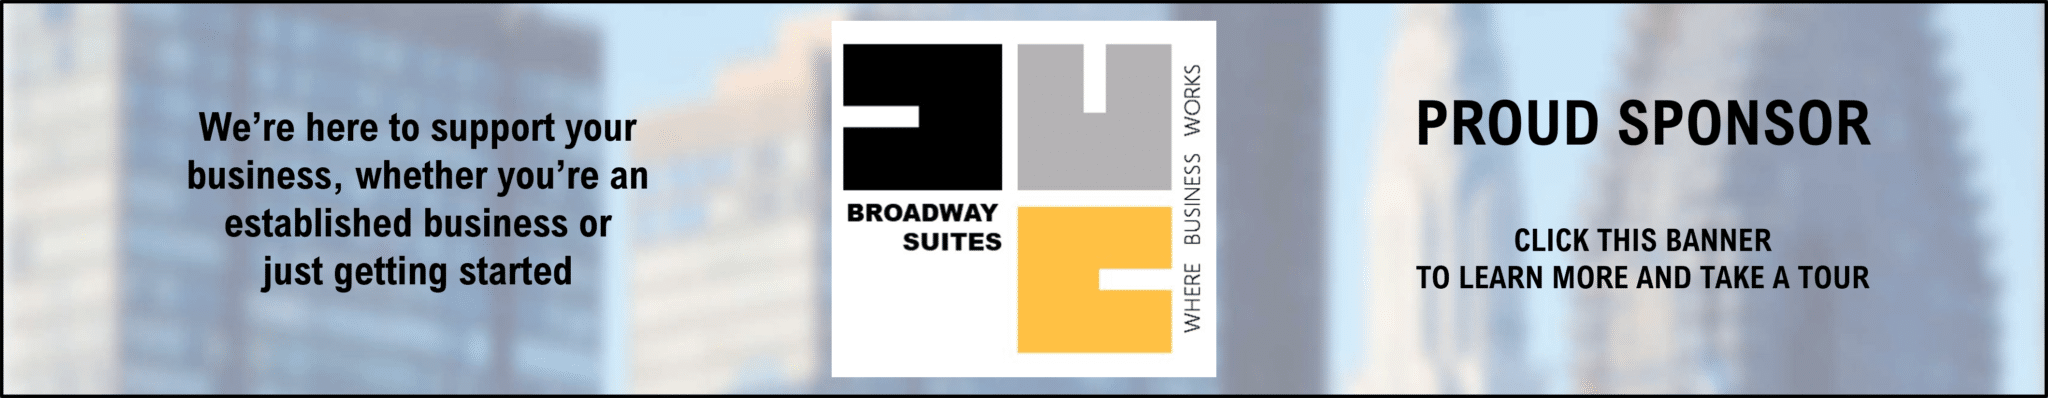 B'way Suites Banner Ad